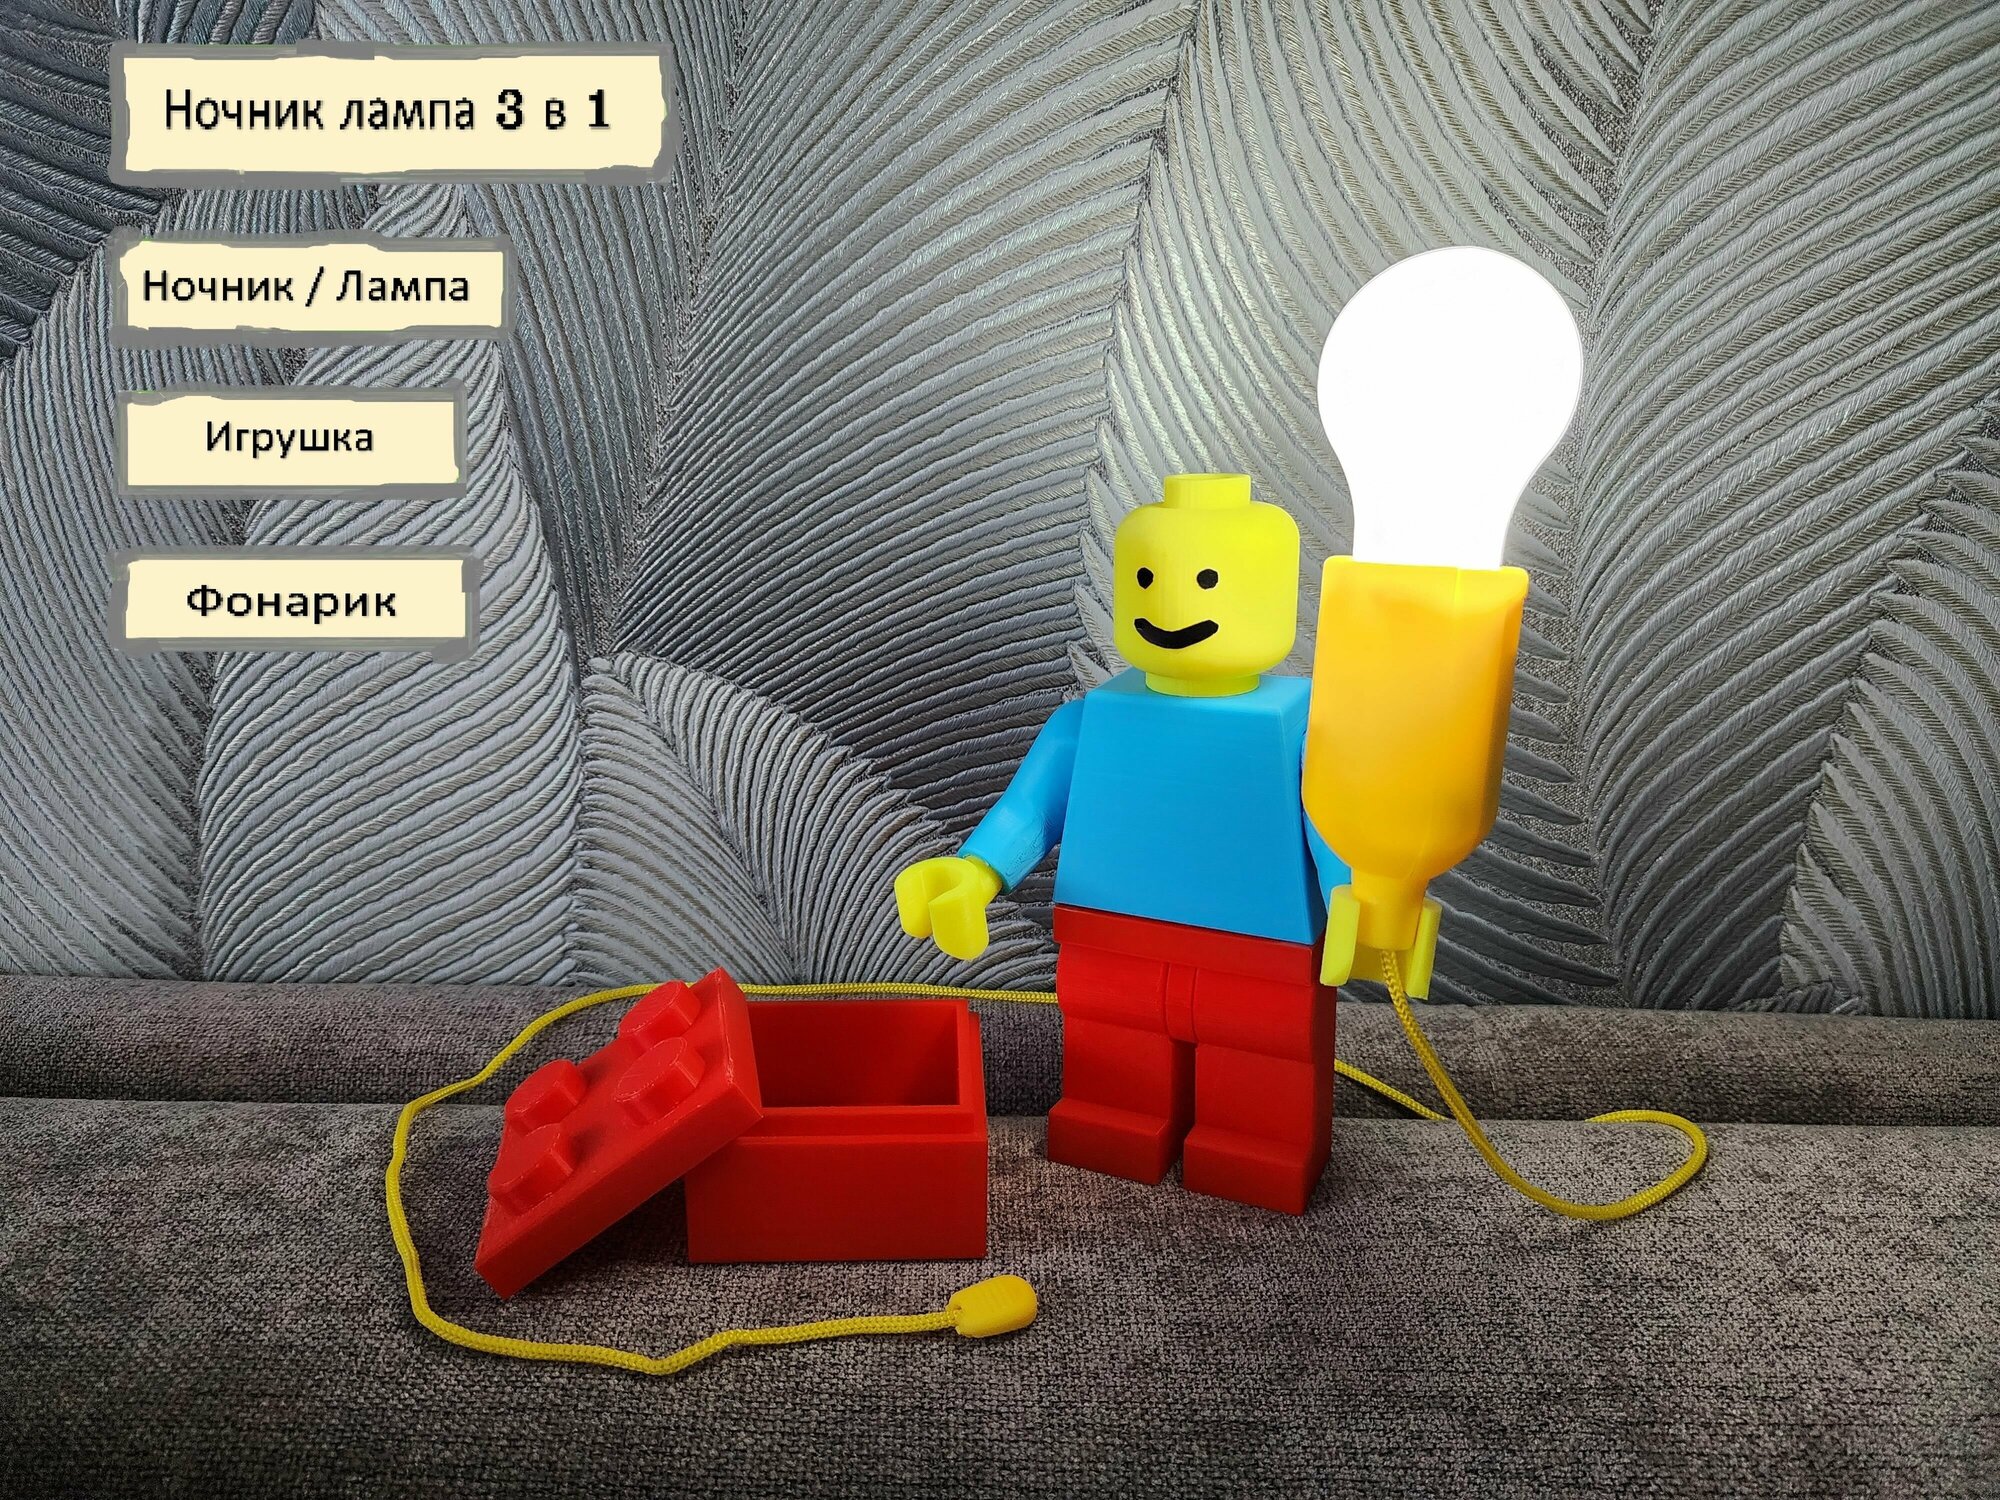 Лампа - ночник: 3 в 1 (лампа, игрушка, фонарик) в виде LEGO/Лего человечка - фотография № 1